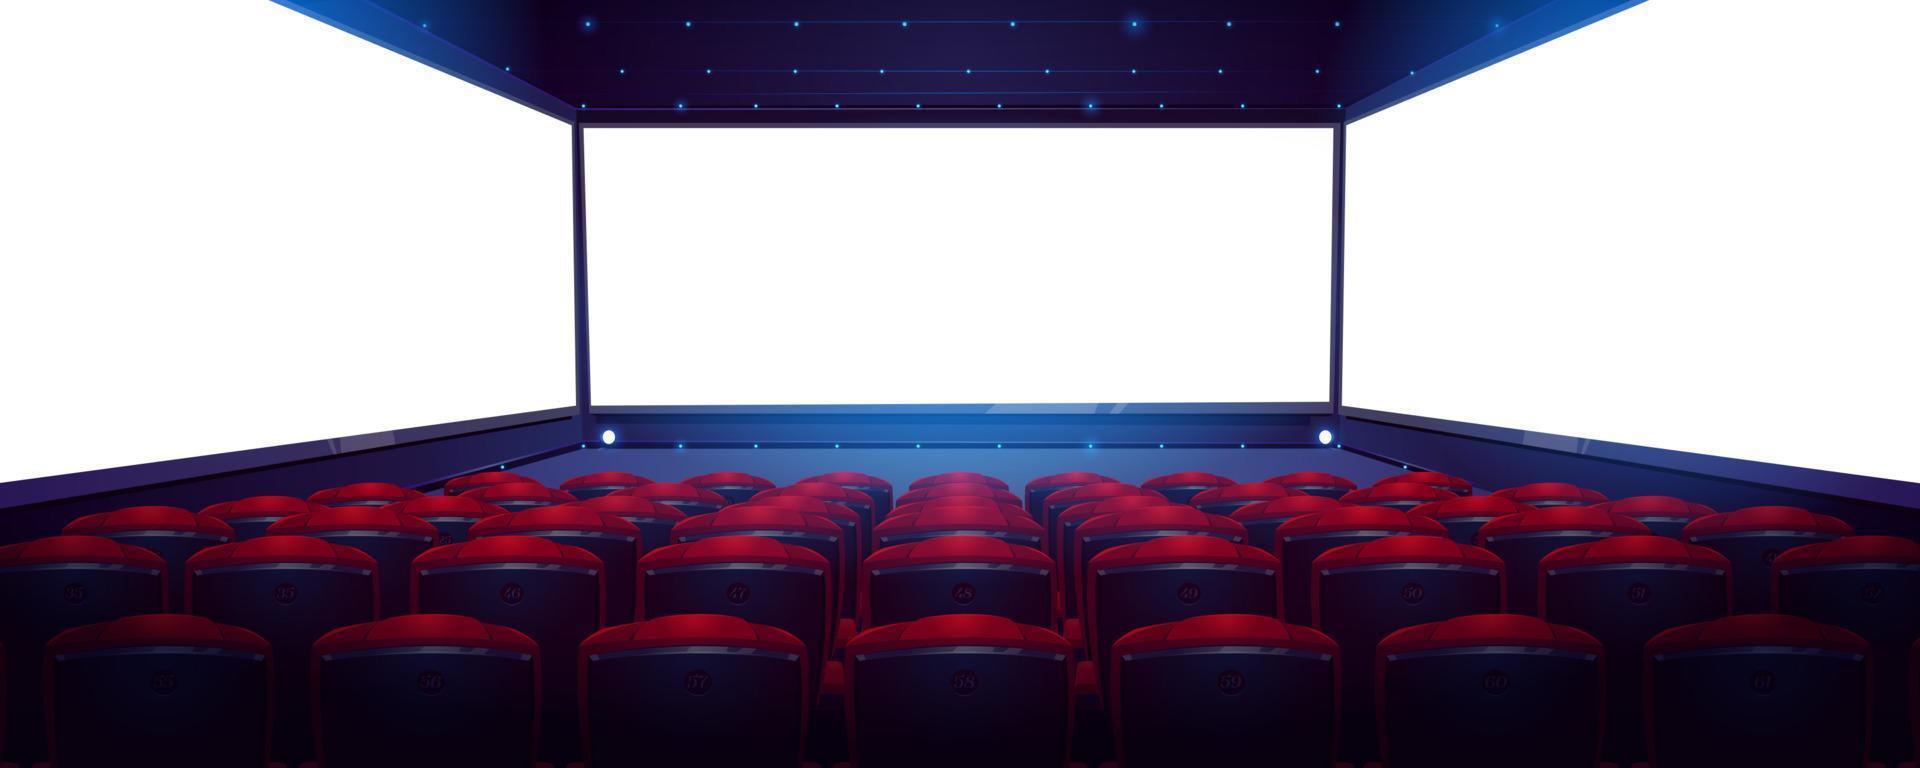 kino, kino mit weißer leinwand und sitzplätzen vektor